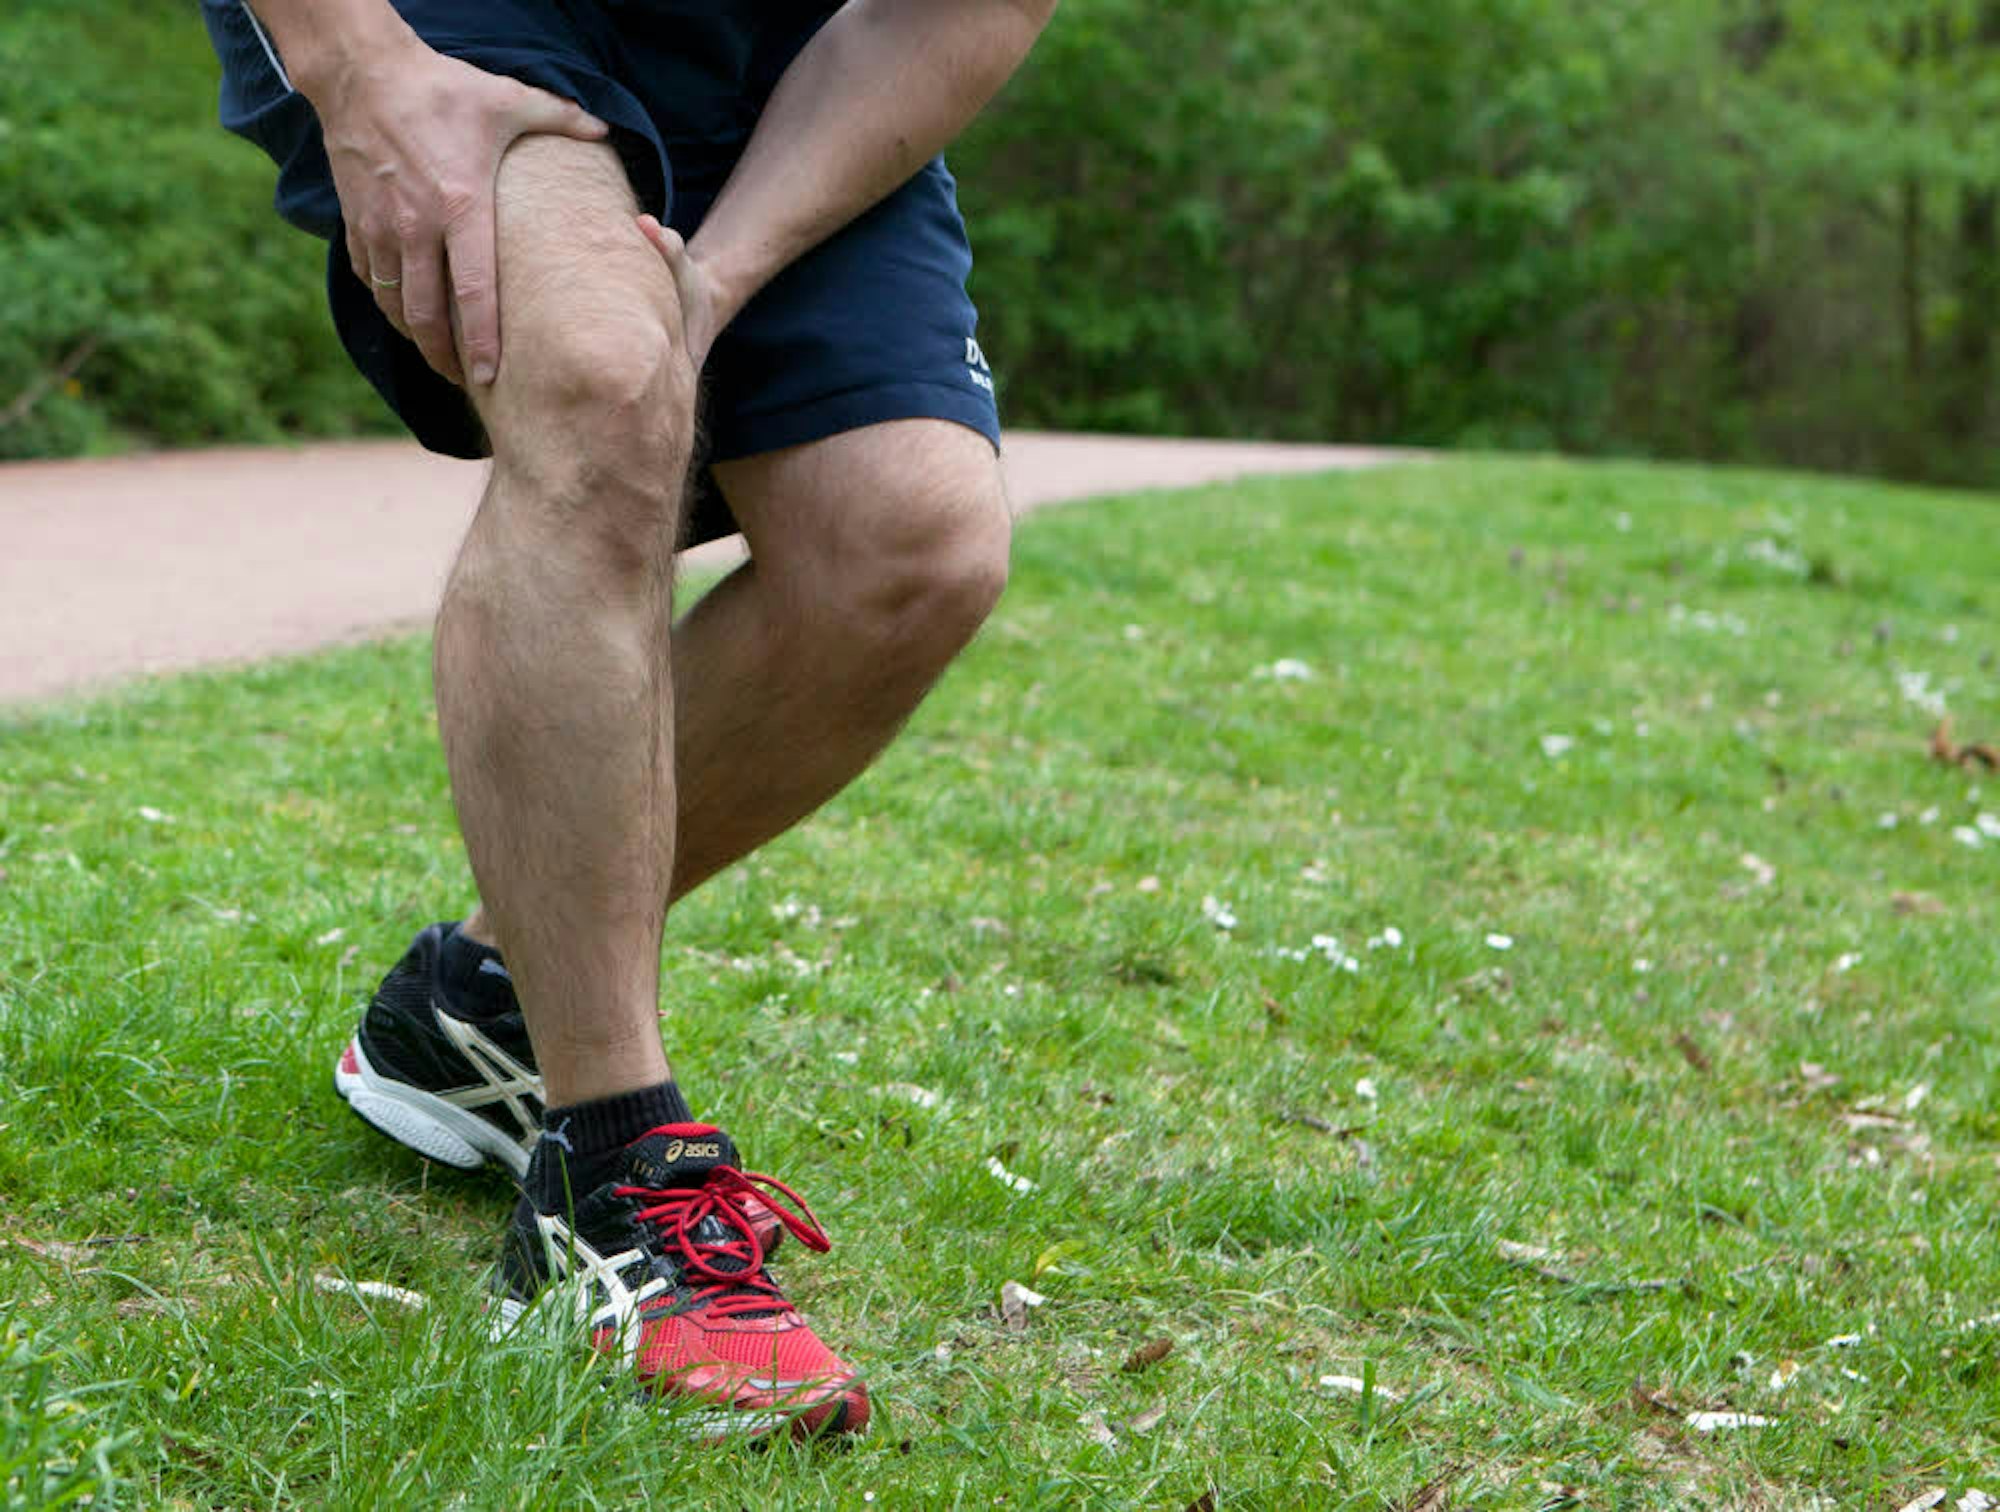 Schmerzen im Knie beim Sport sind nichts Ungewöhnliches. Wie sie zu lindern oder zu beheben sind, will gut überlegt sein, denn jede Operation birgt Risiken.